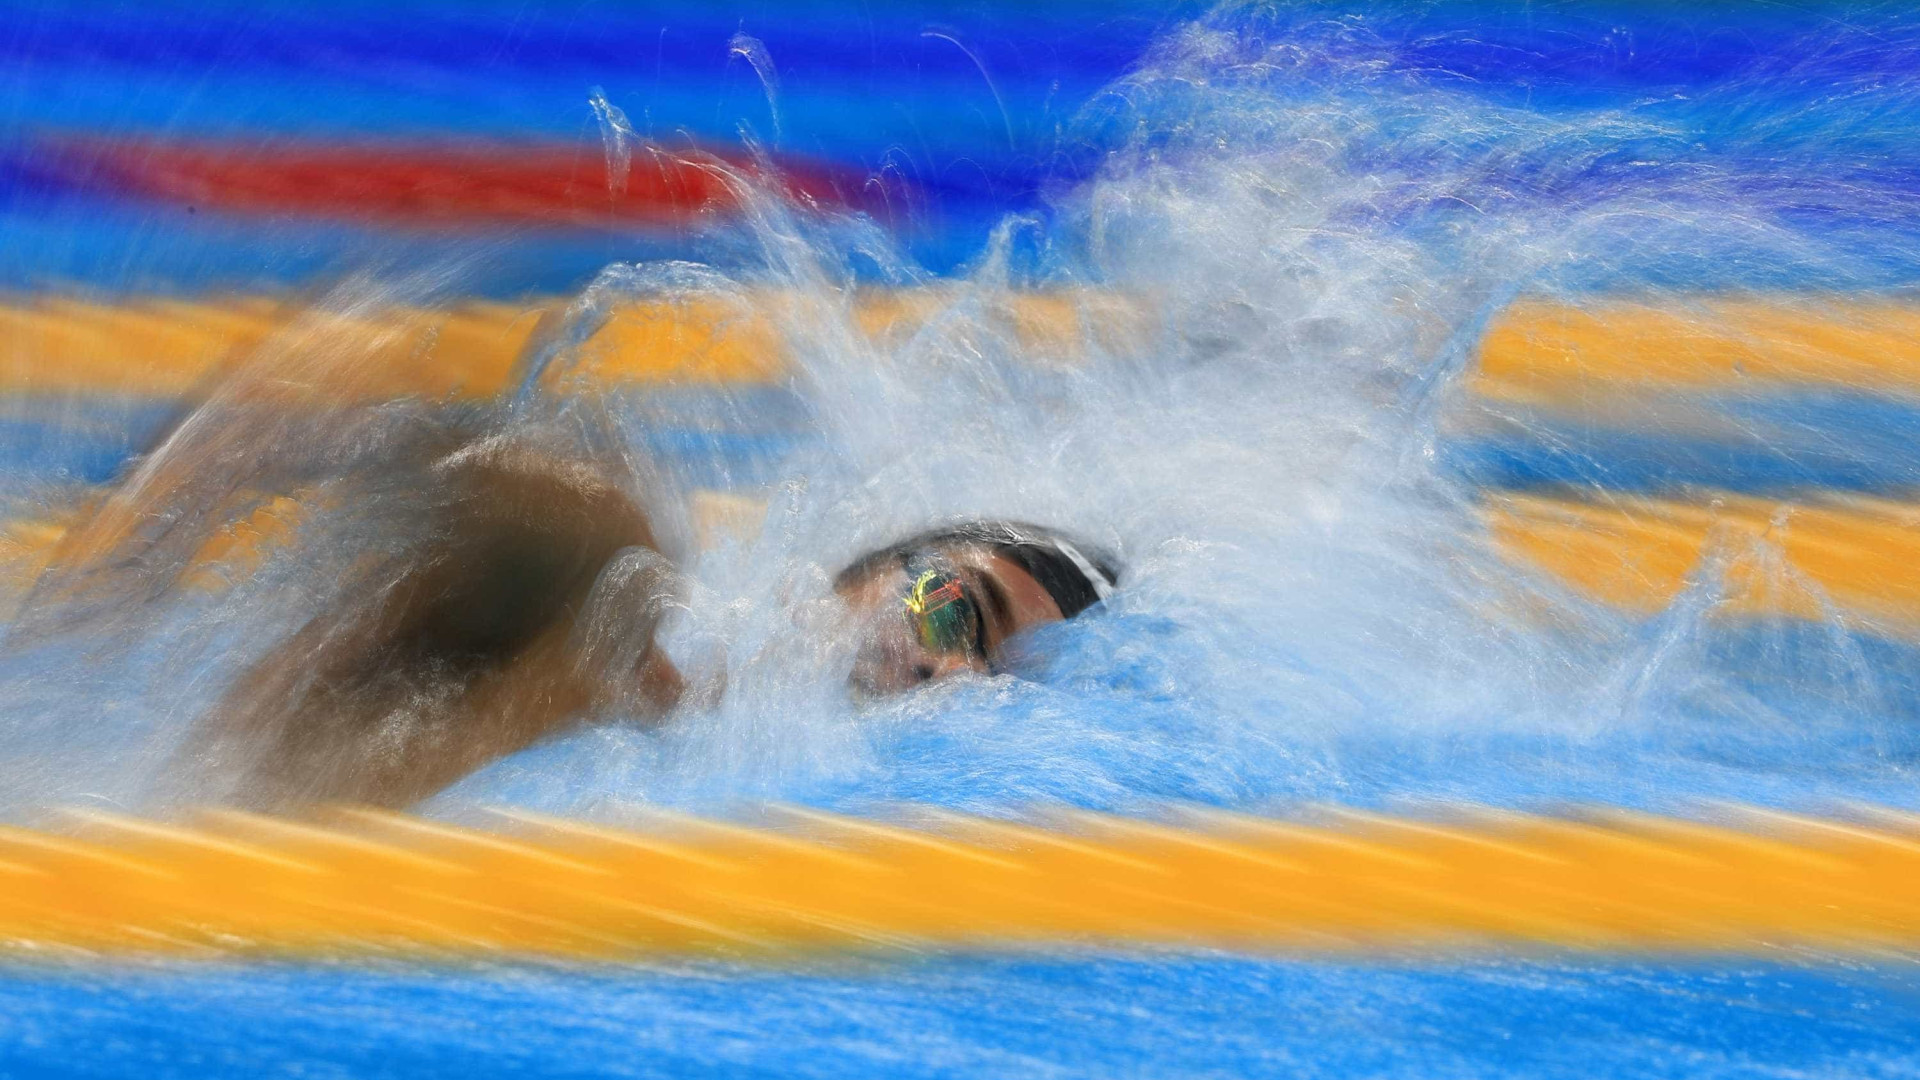 Brasil conquista todas as vagas possíveis para as finais da natação no Pan